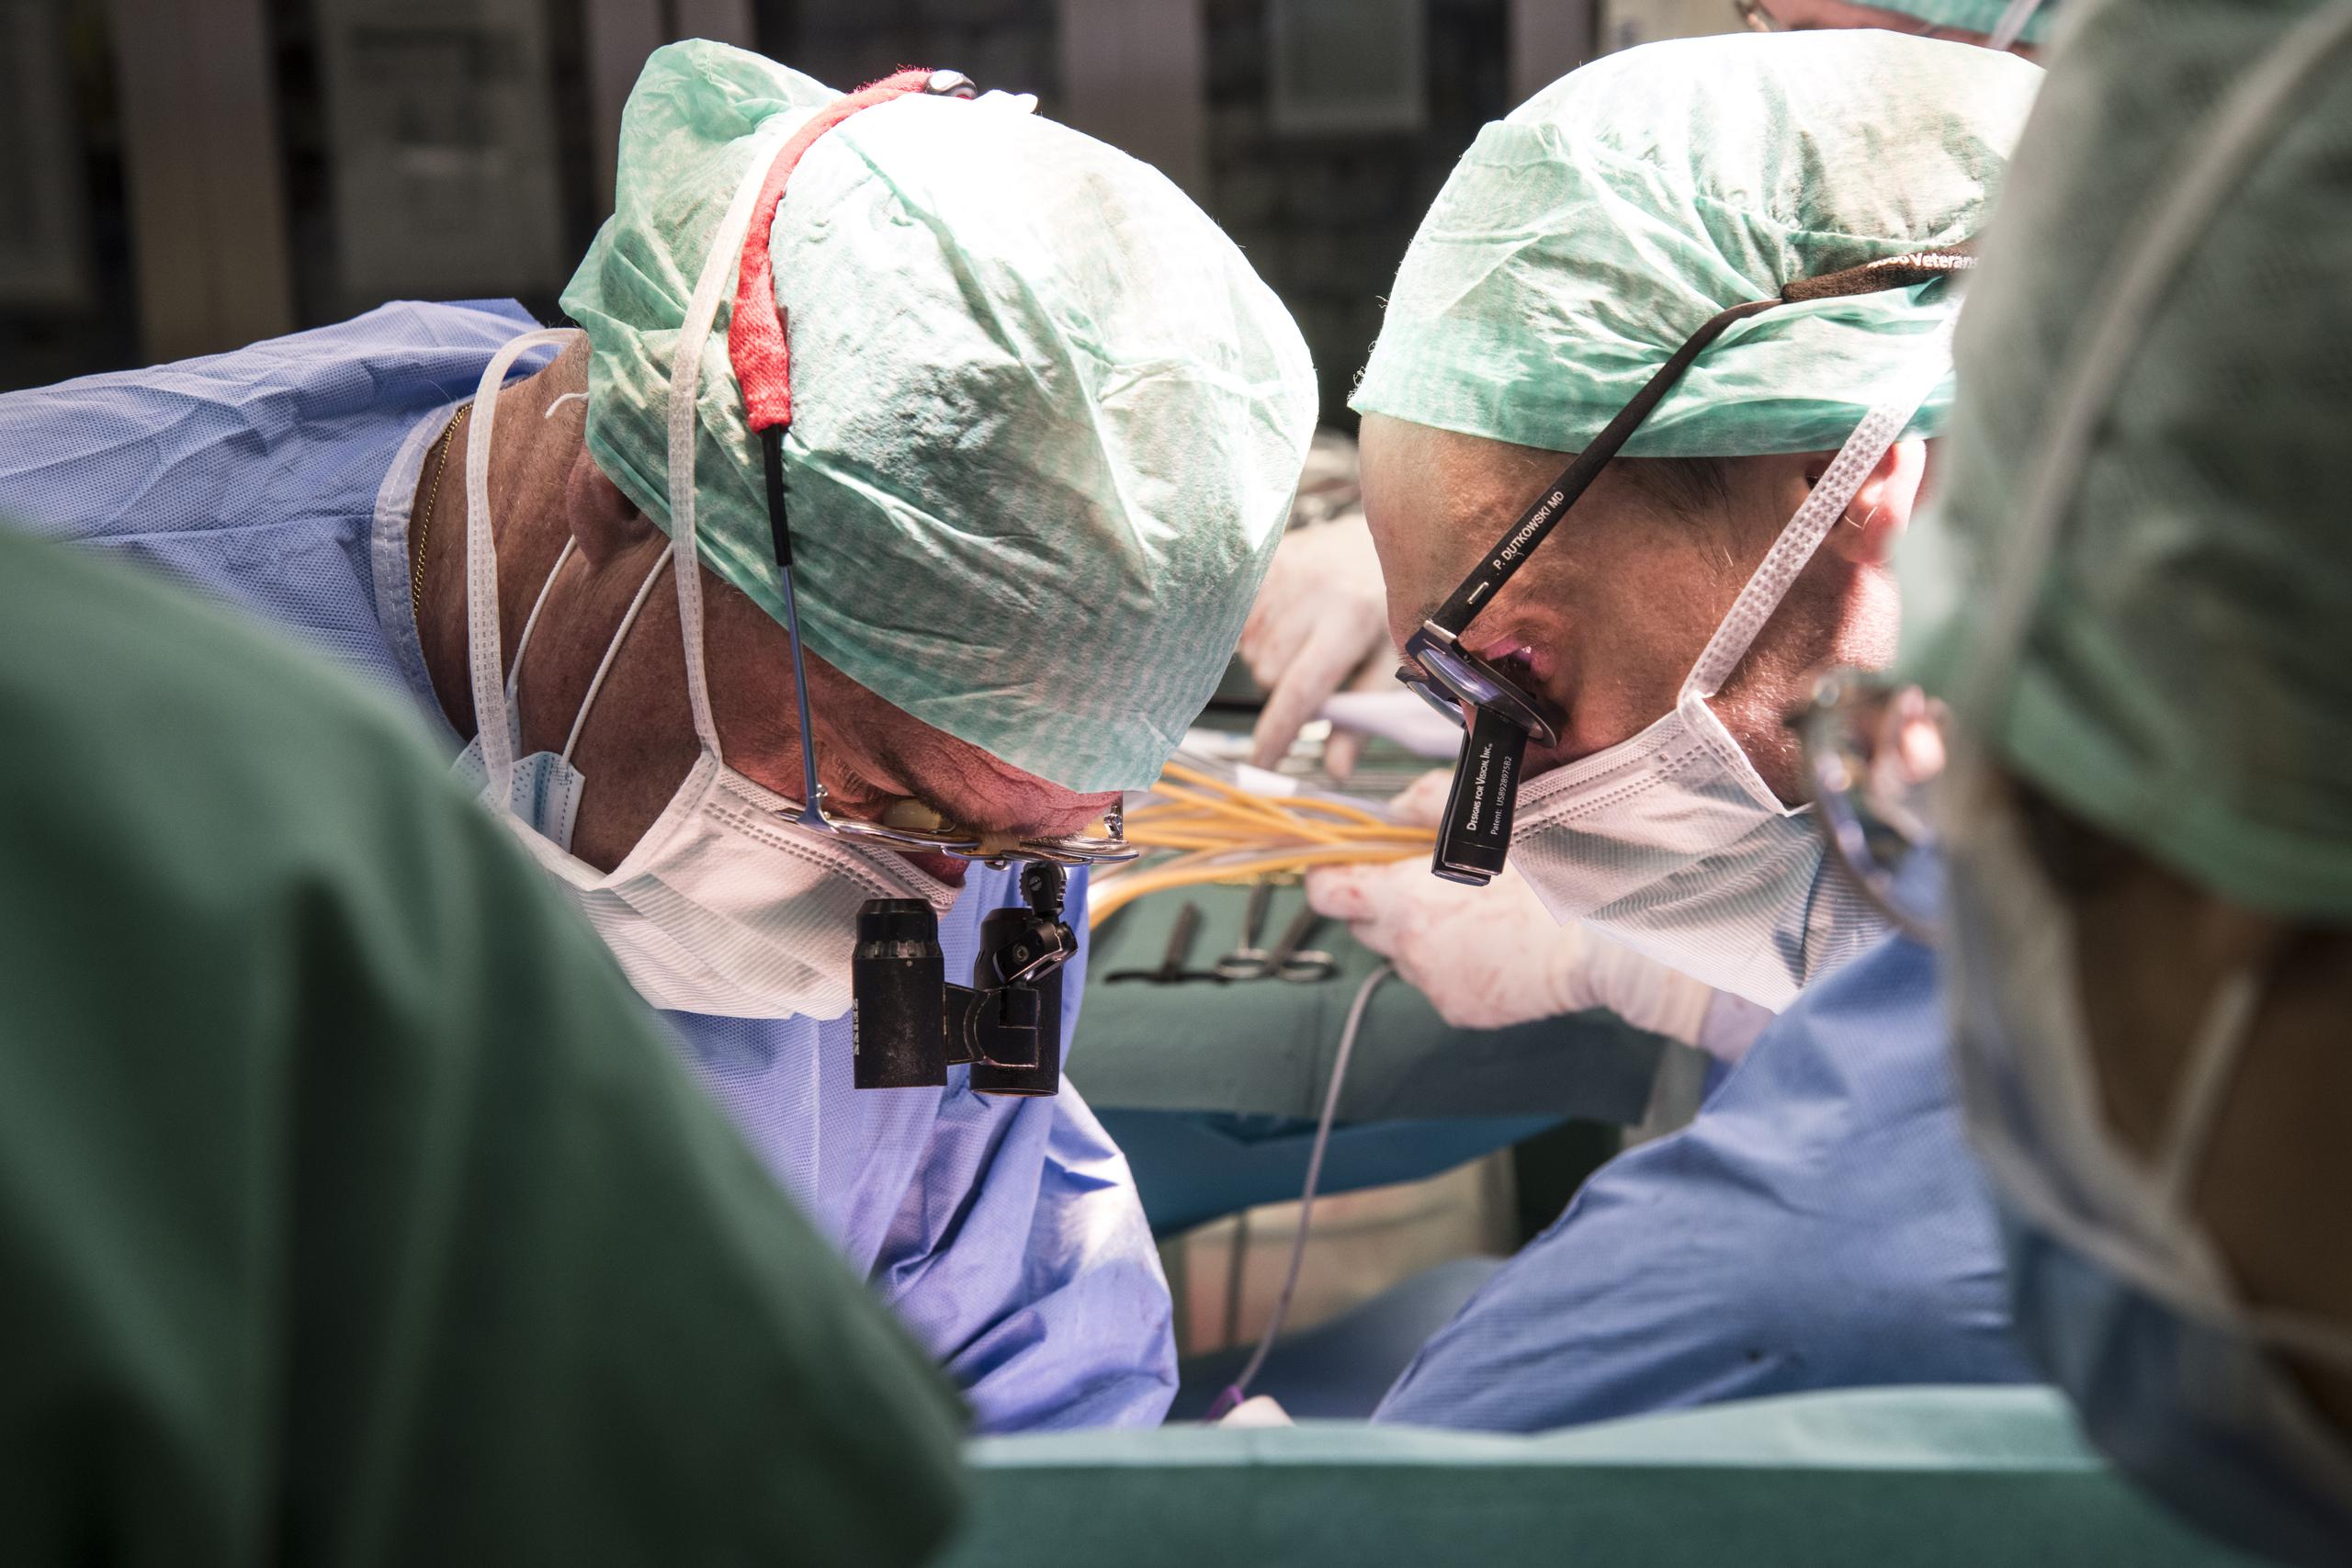 Los profesores Pierre-Alain Clavien y Philipp Dutkowski durante el trasplante del hígado tratado en la máquina. (EFE/Imagen cedida por el Hospital Universitario de Zúrich)